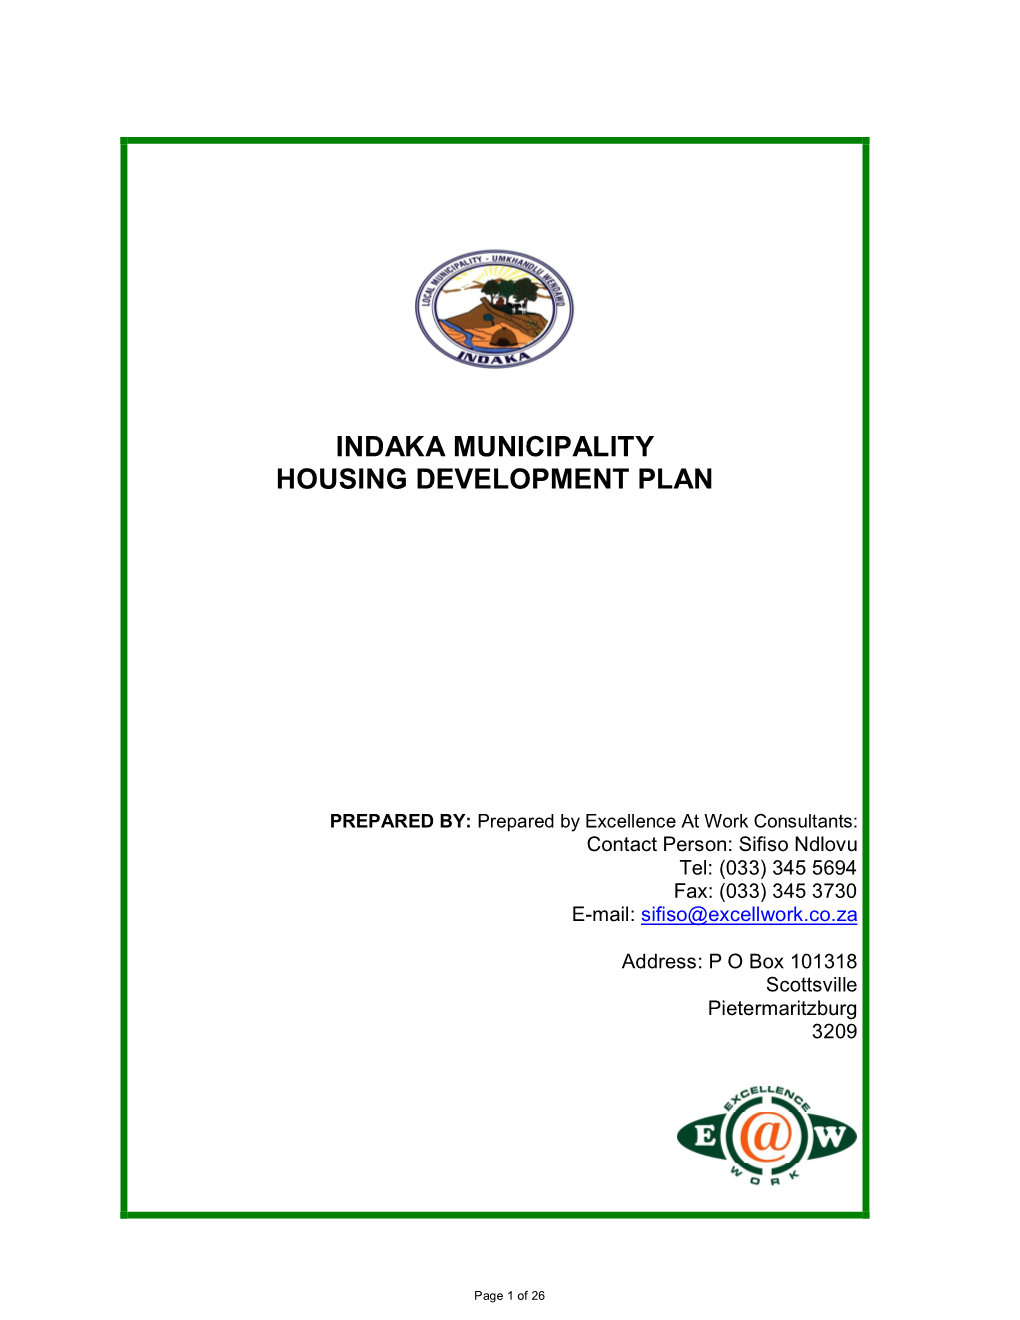 Indaka Municipality Housing Development Plan